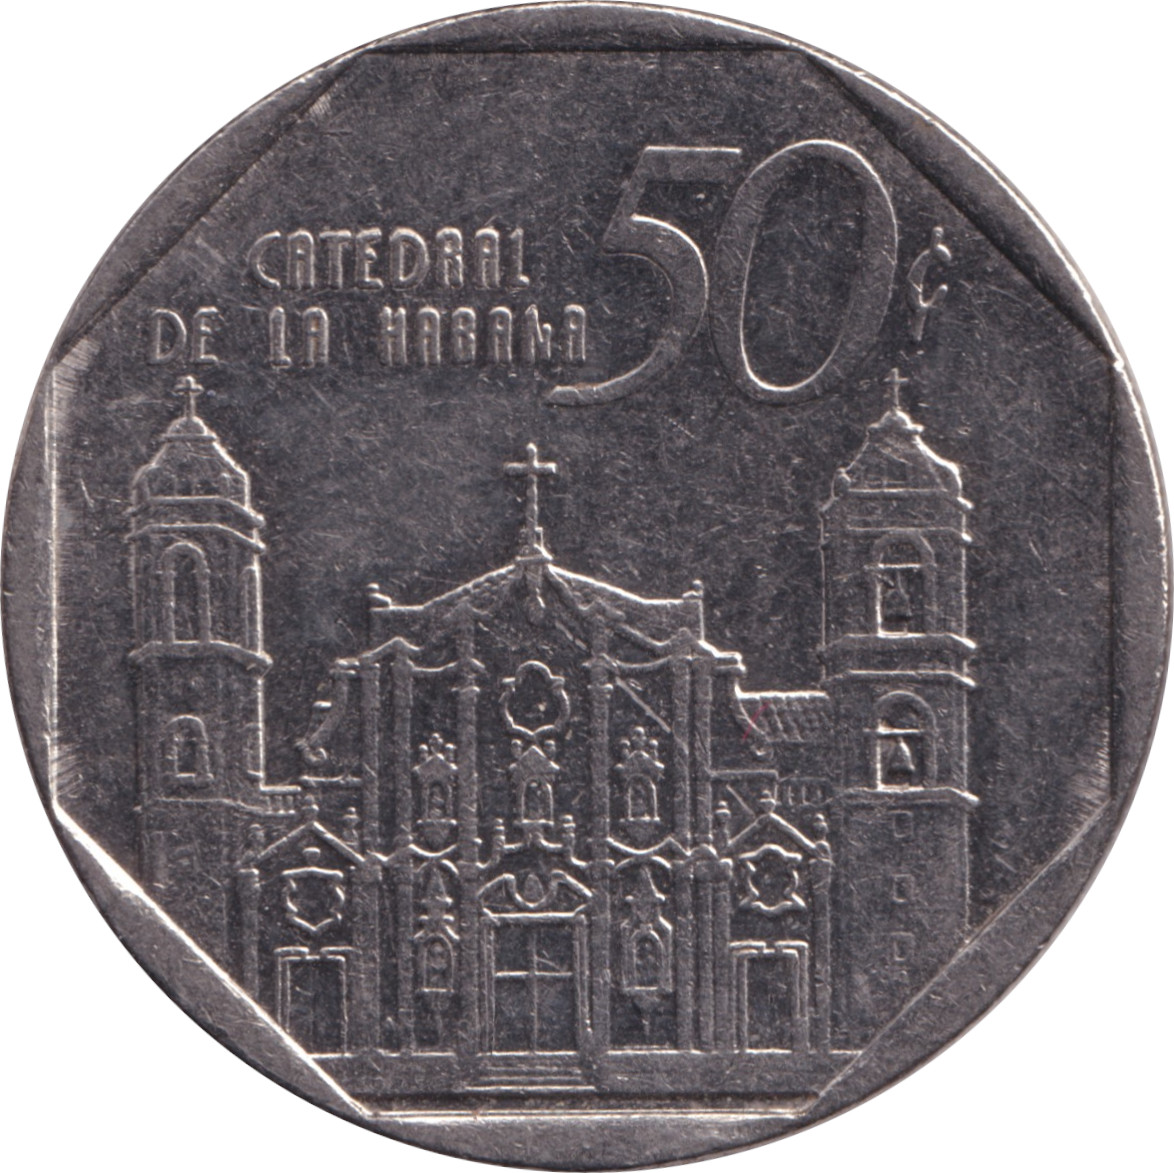 50 centavos - Cathédrale de la Havane